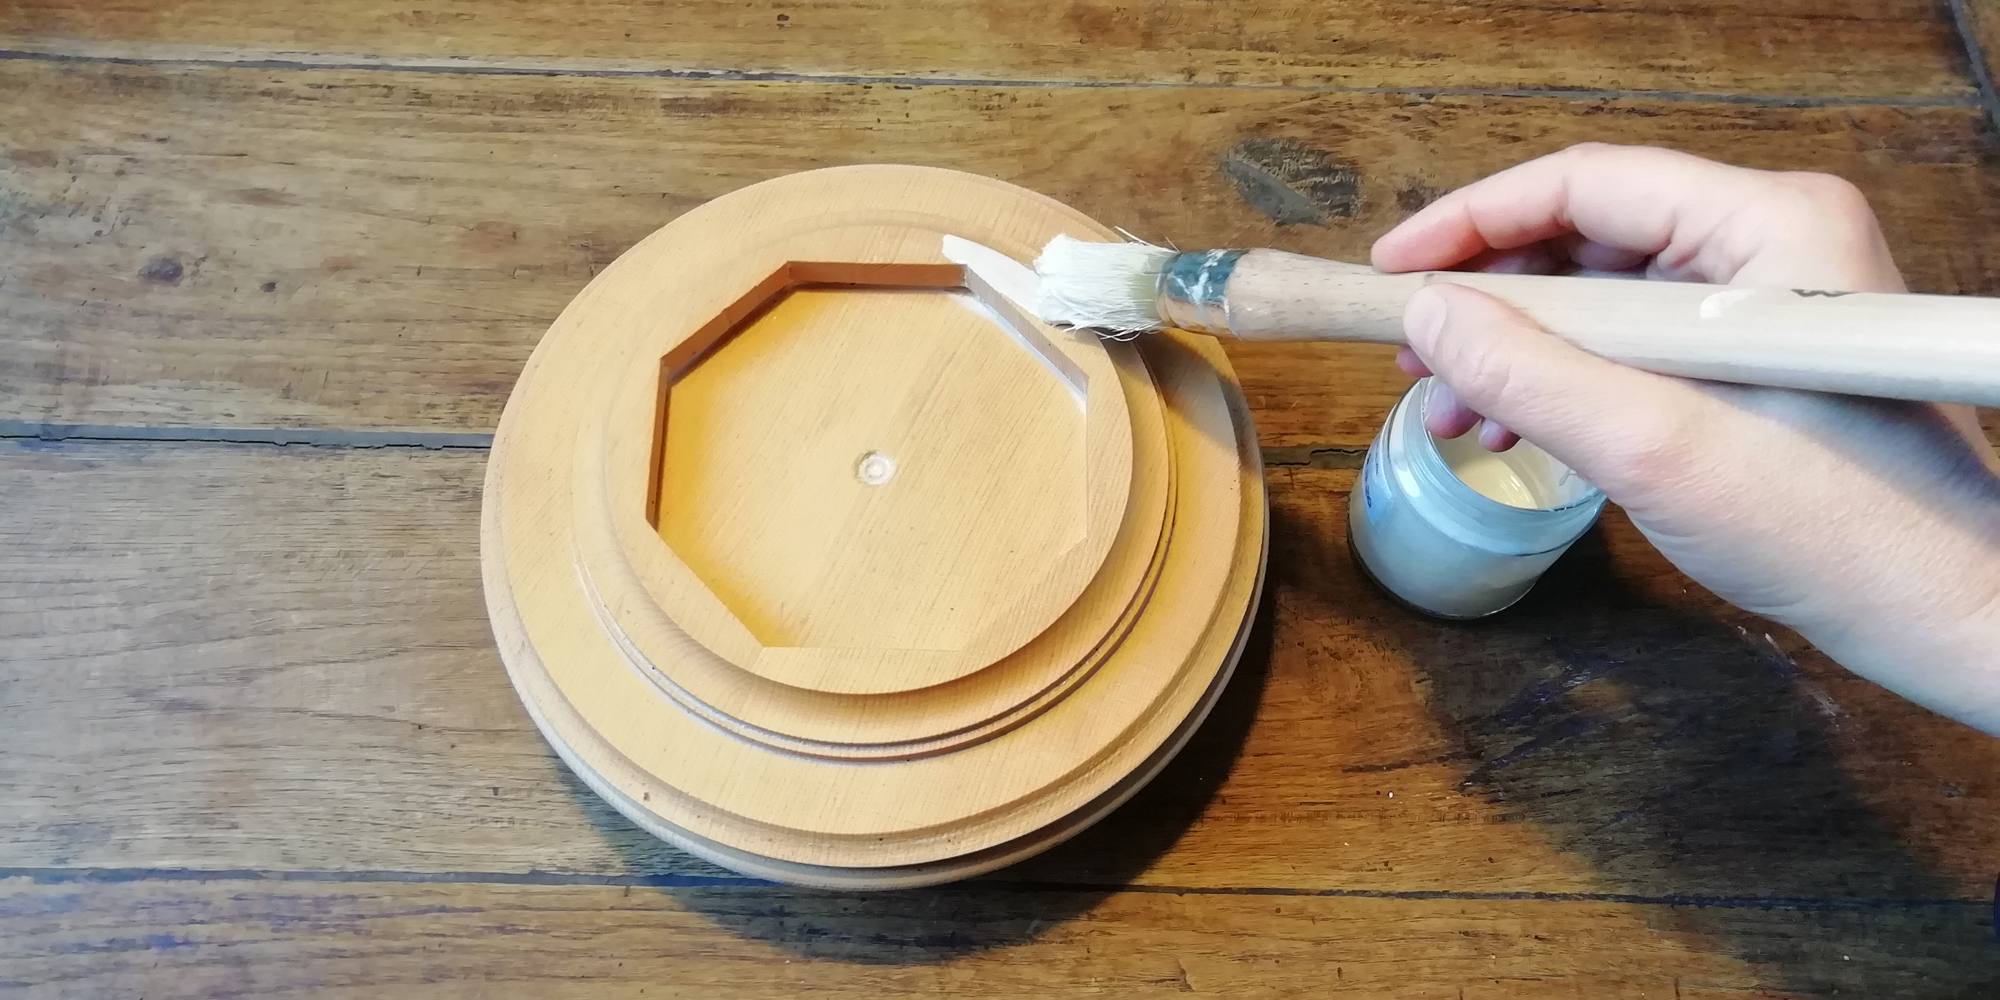 La tecnica della ammanitura o gessatura su legno